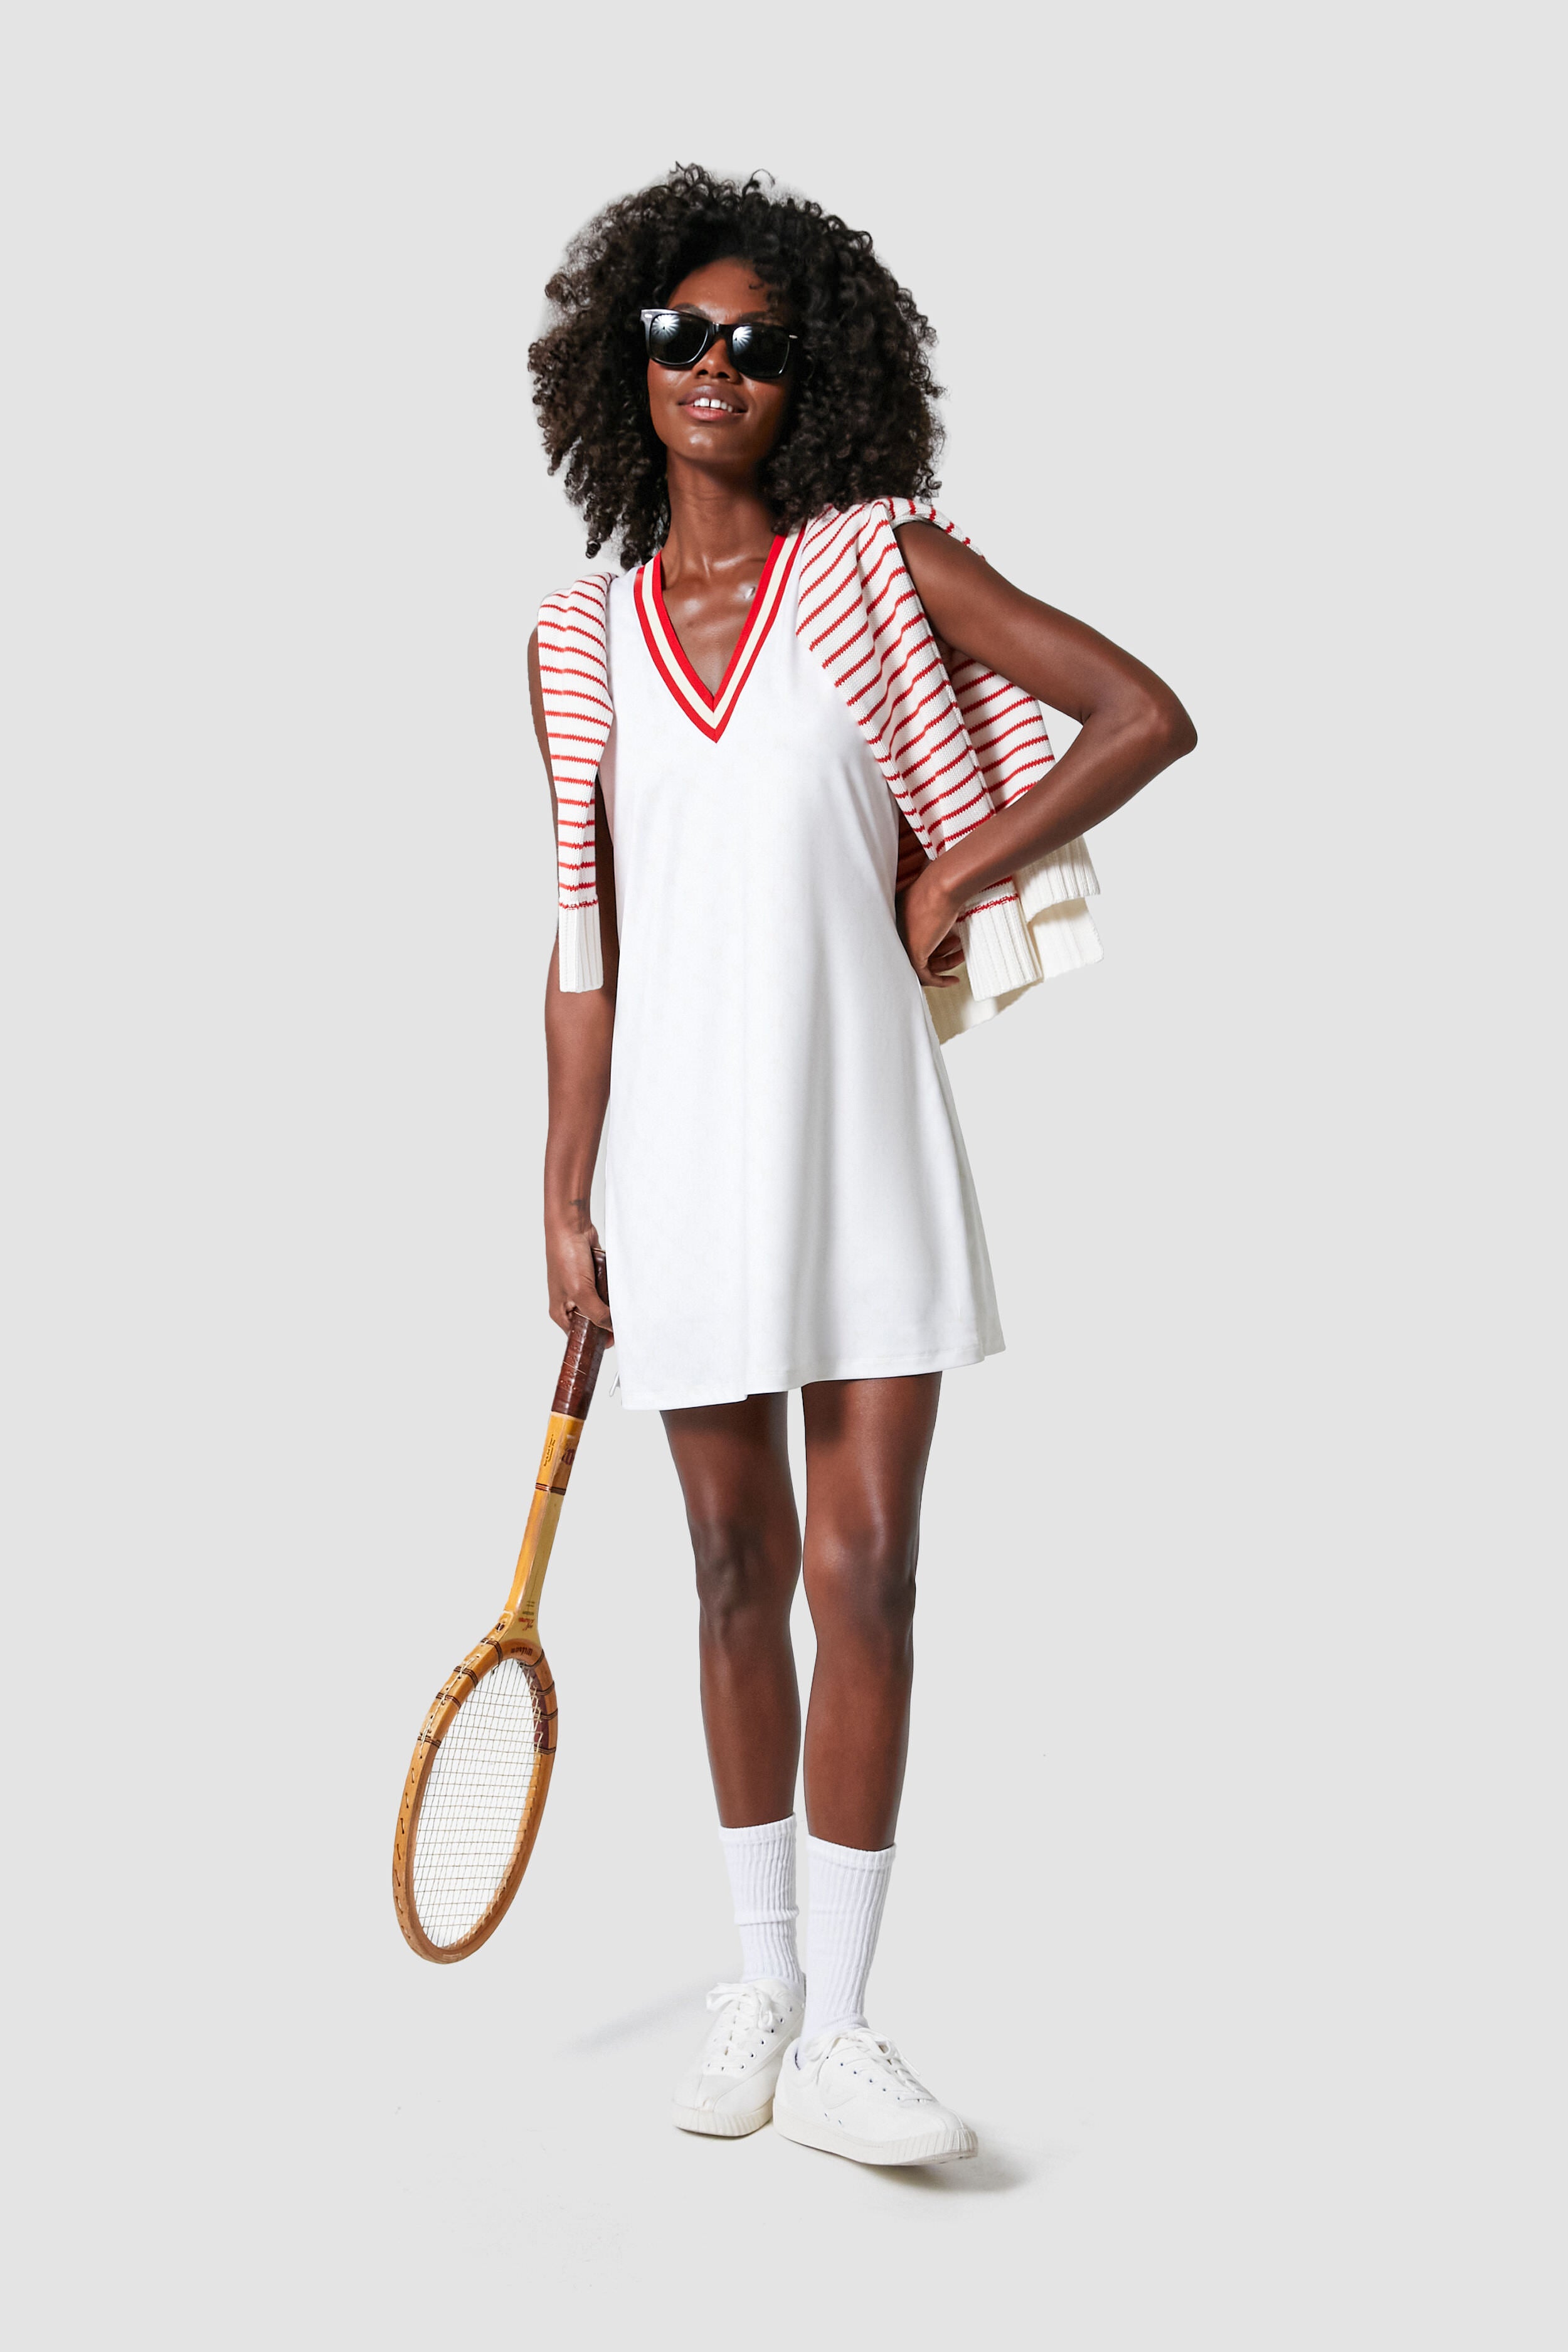 chikane mælk skorsten White and Retro Red Suzanne Tennis Dress | Tnuck Sport